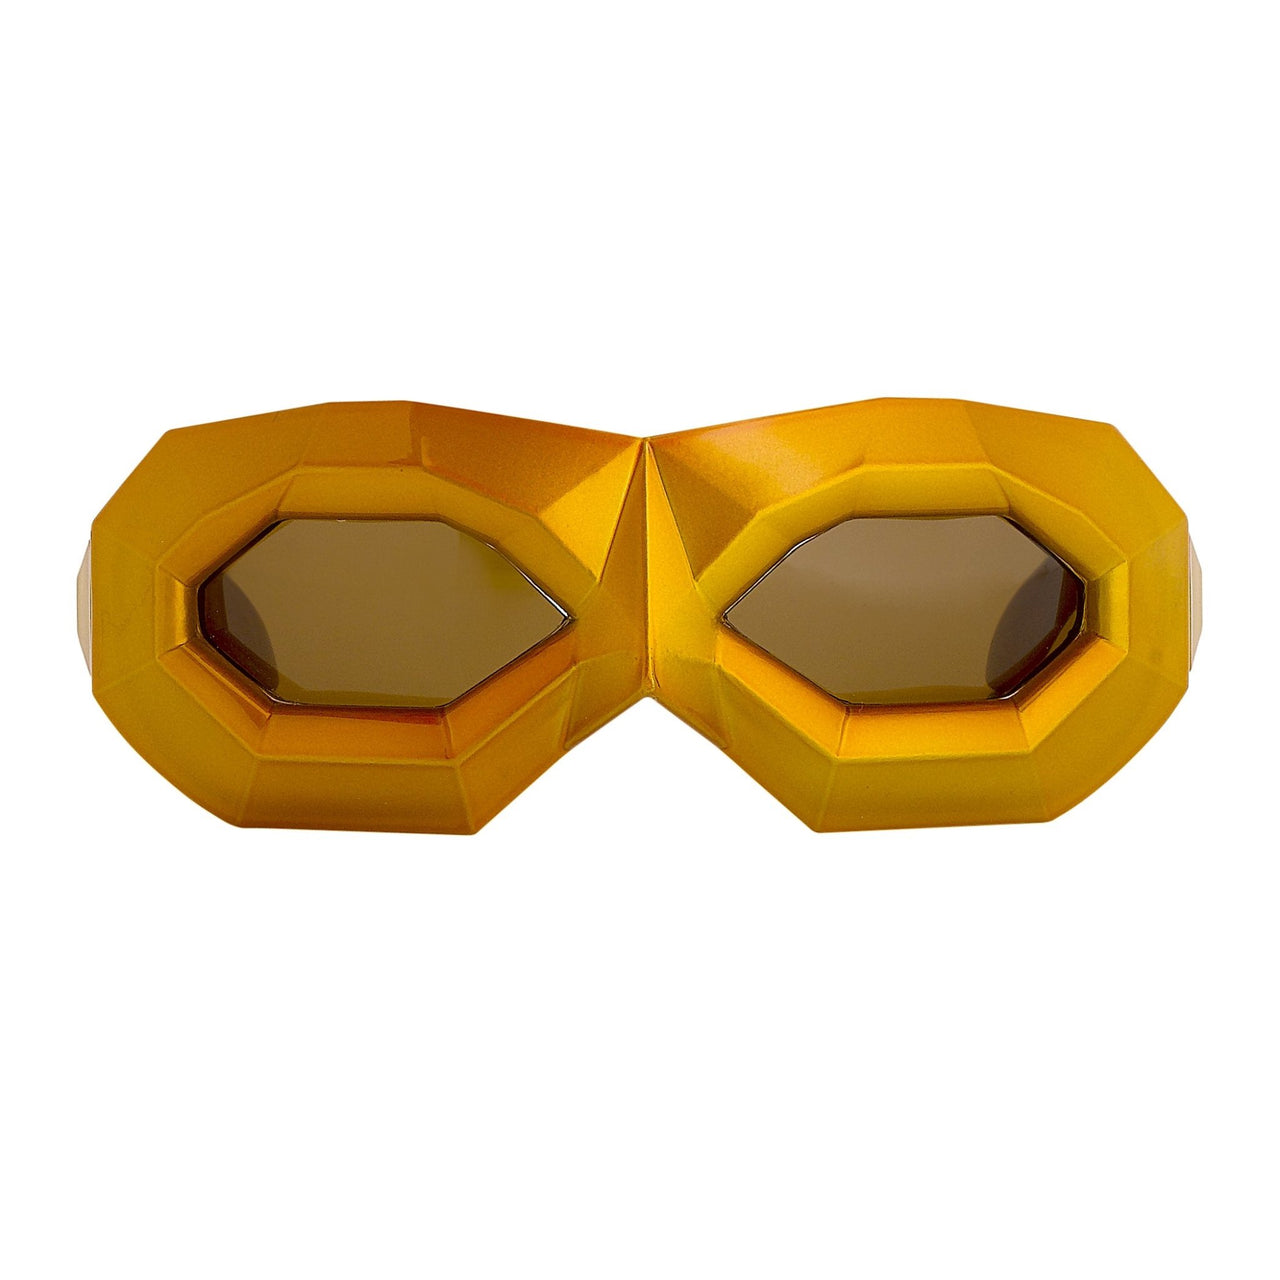 Shield sunglasses: Walter Van Beirendonck collab - Eyestylist